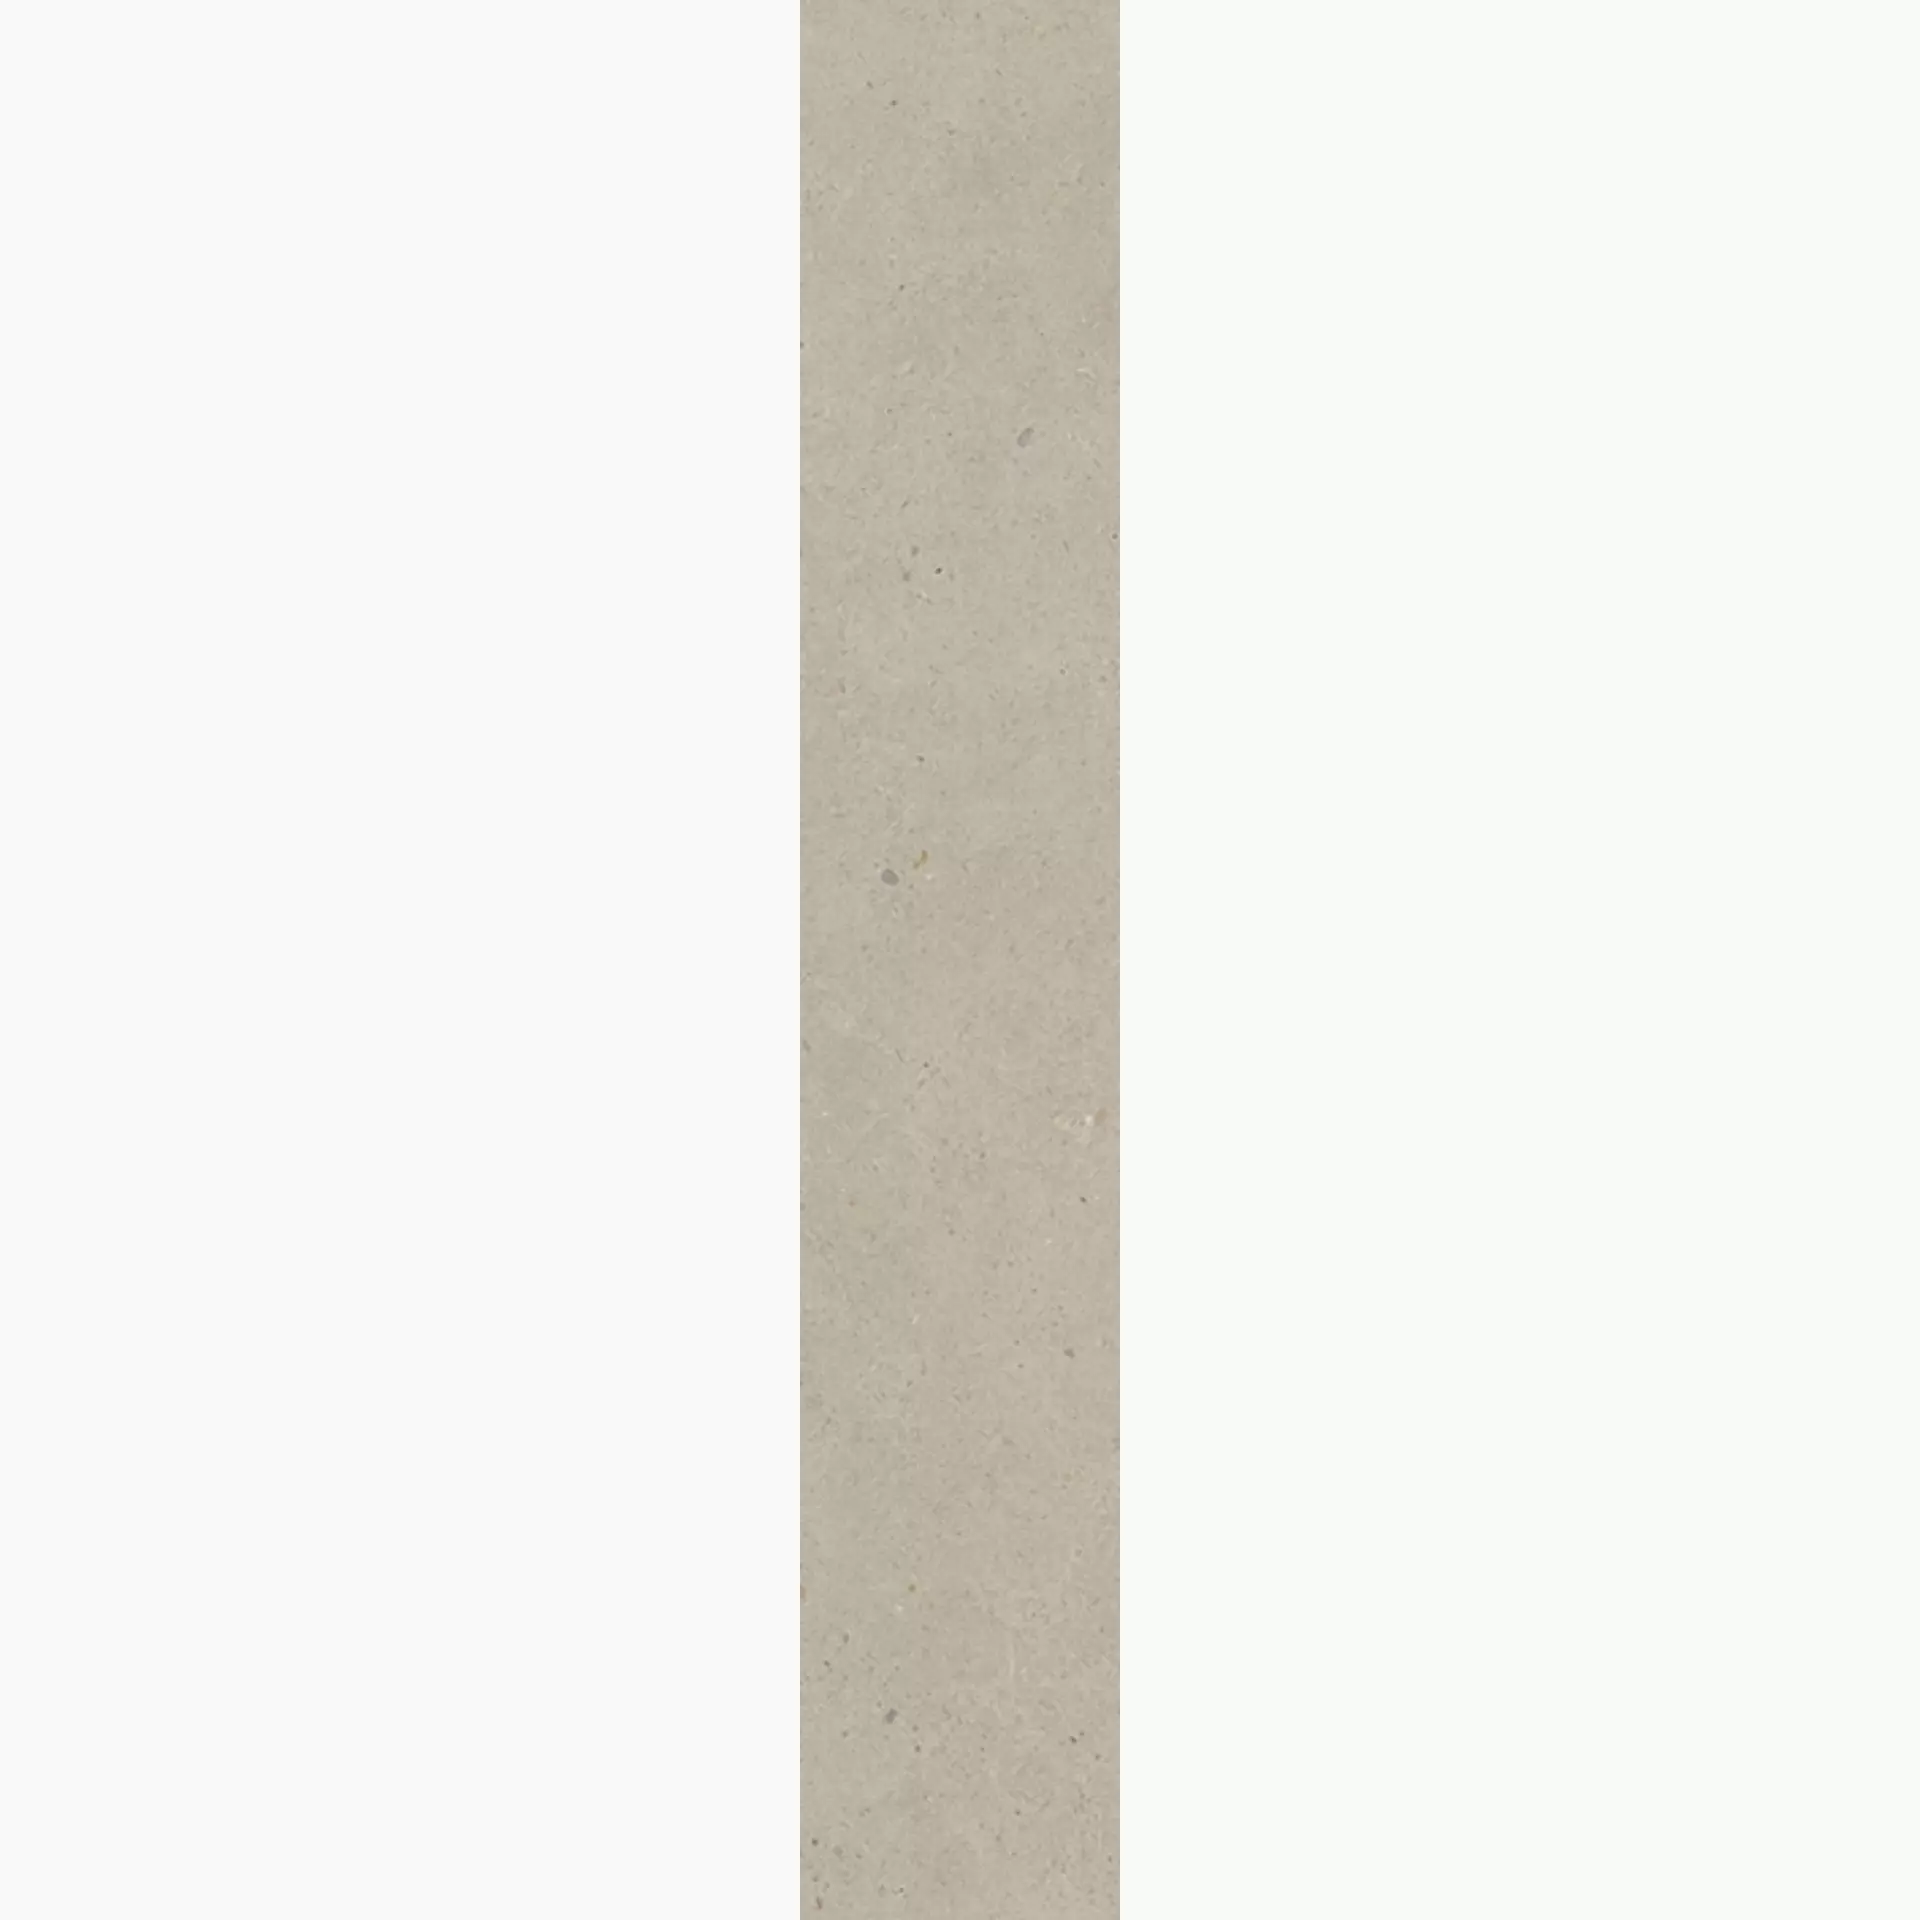 Wandfliese,Bodenfliese Villeroy & Boch Solid Tones Warm Concrete Matt Warm Concrete 2417-PC70 matt 10x60cm rektifiziert 10mm